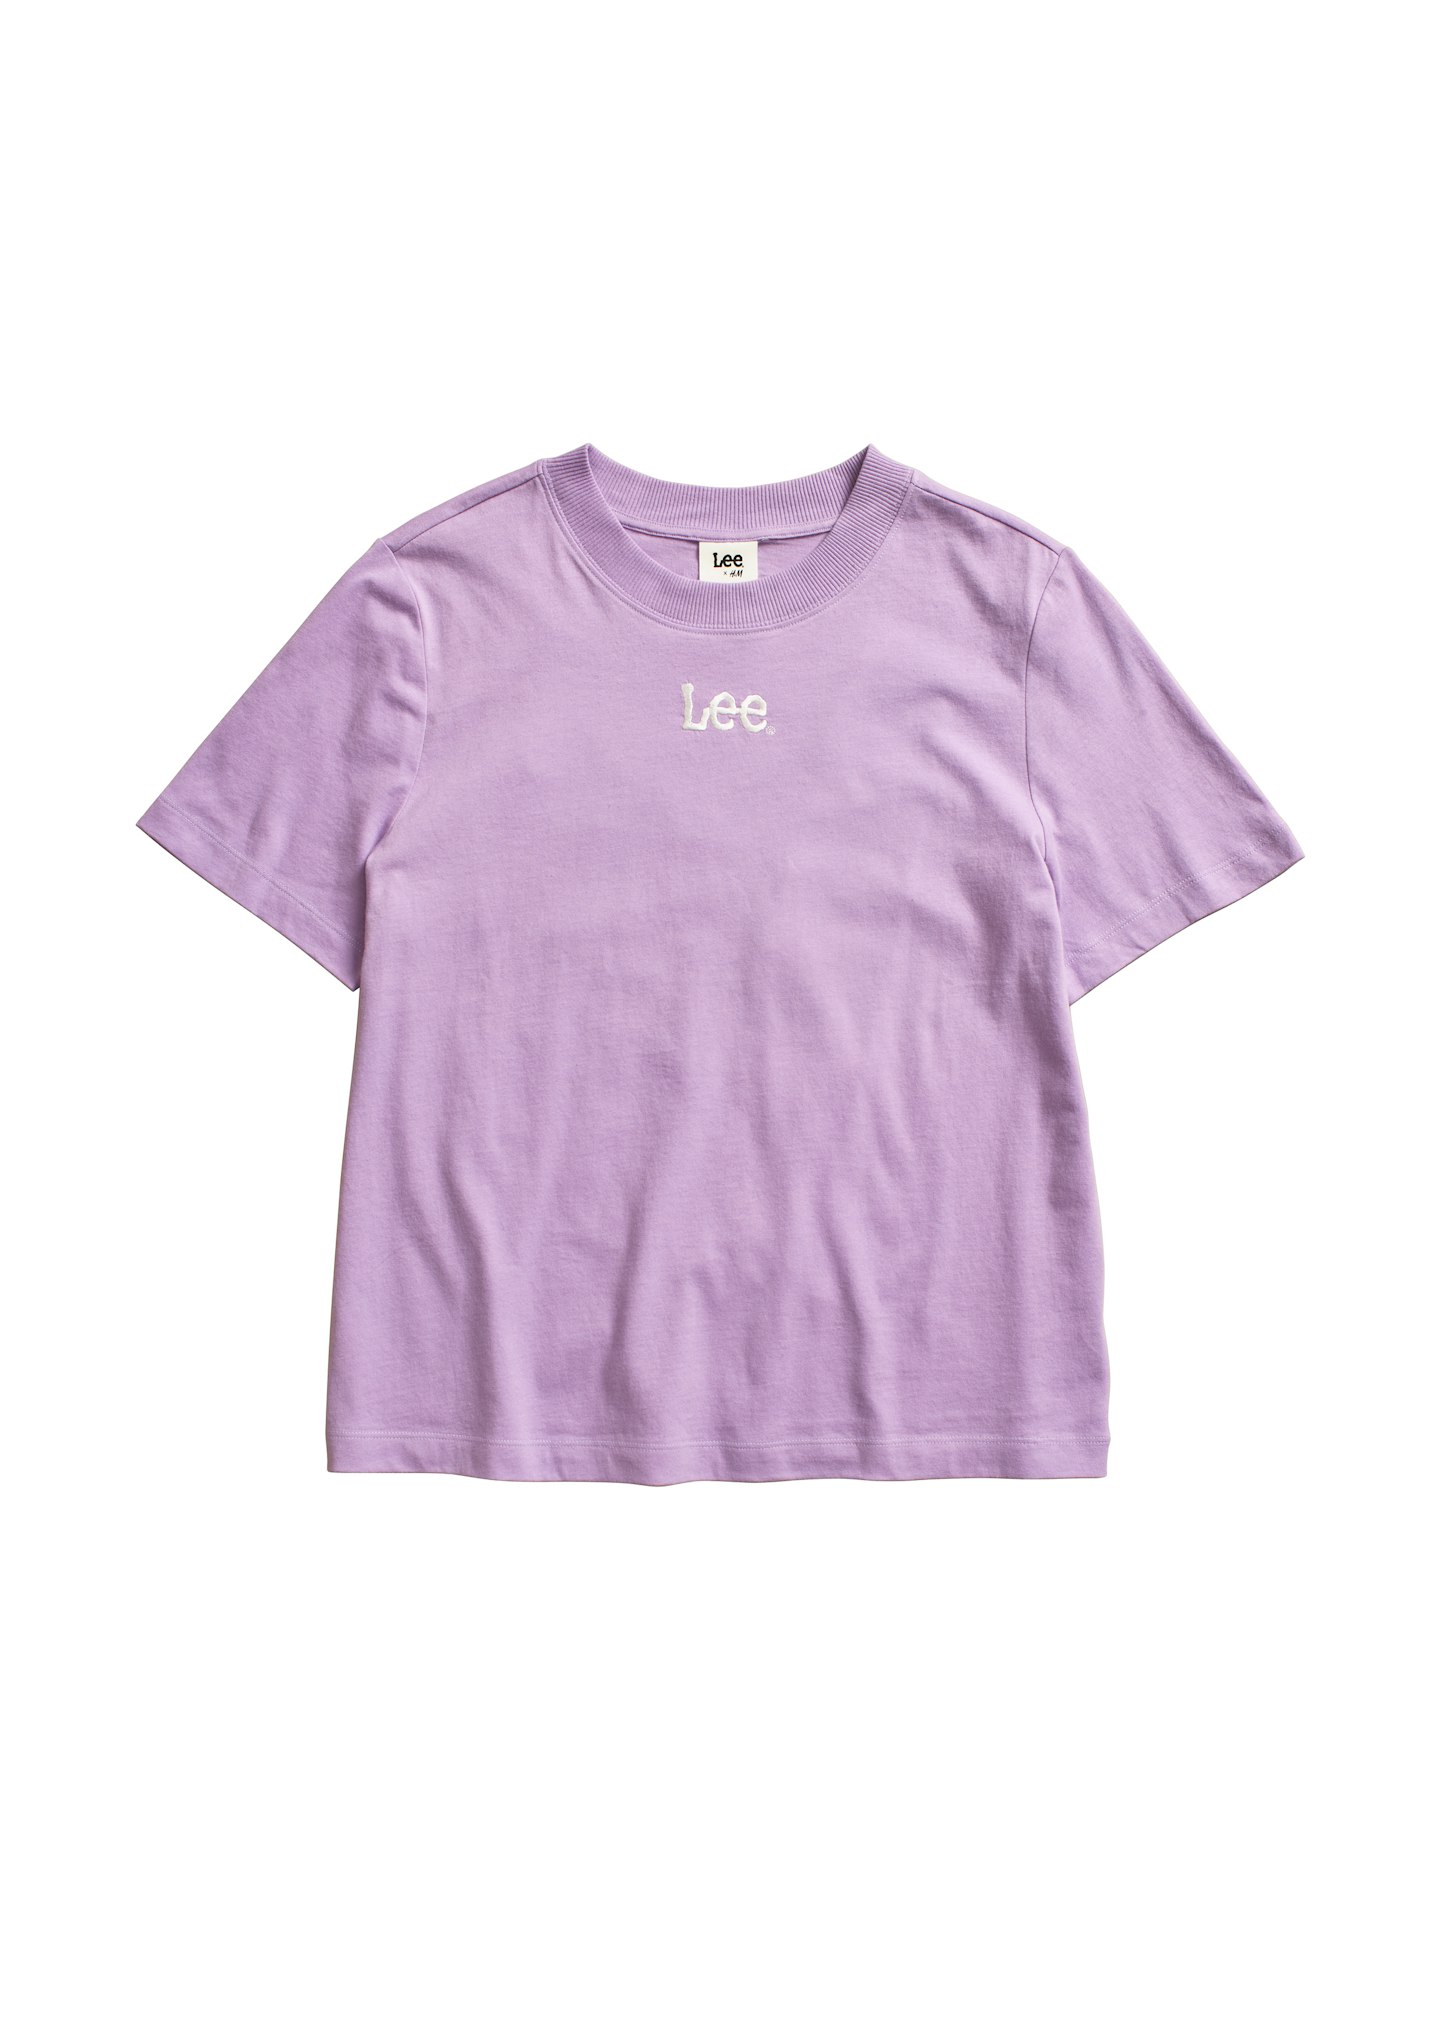 Lee X H&M, Cotton T-shirt, £12.99